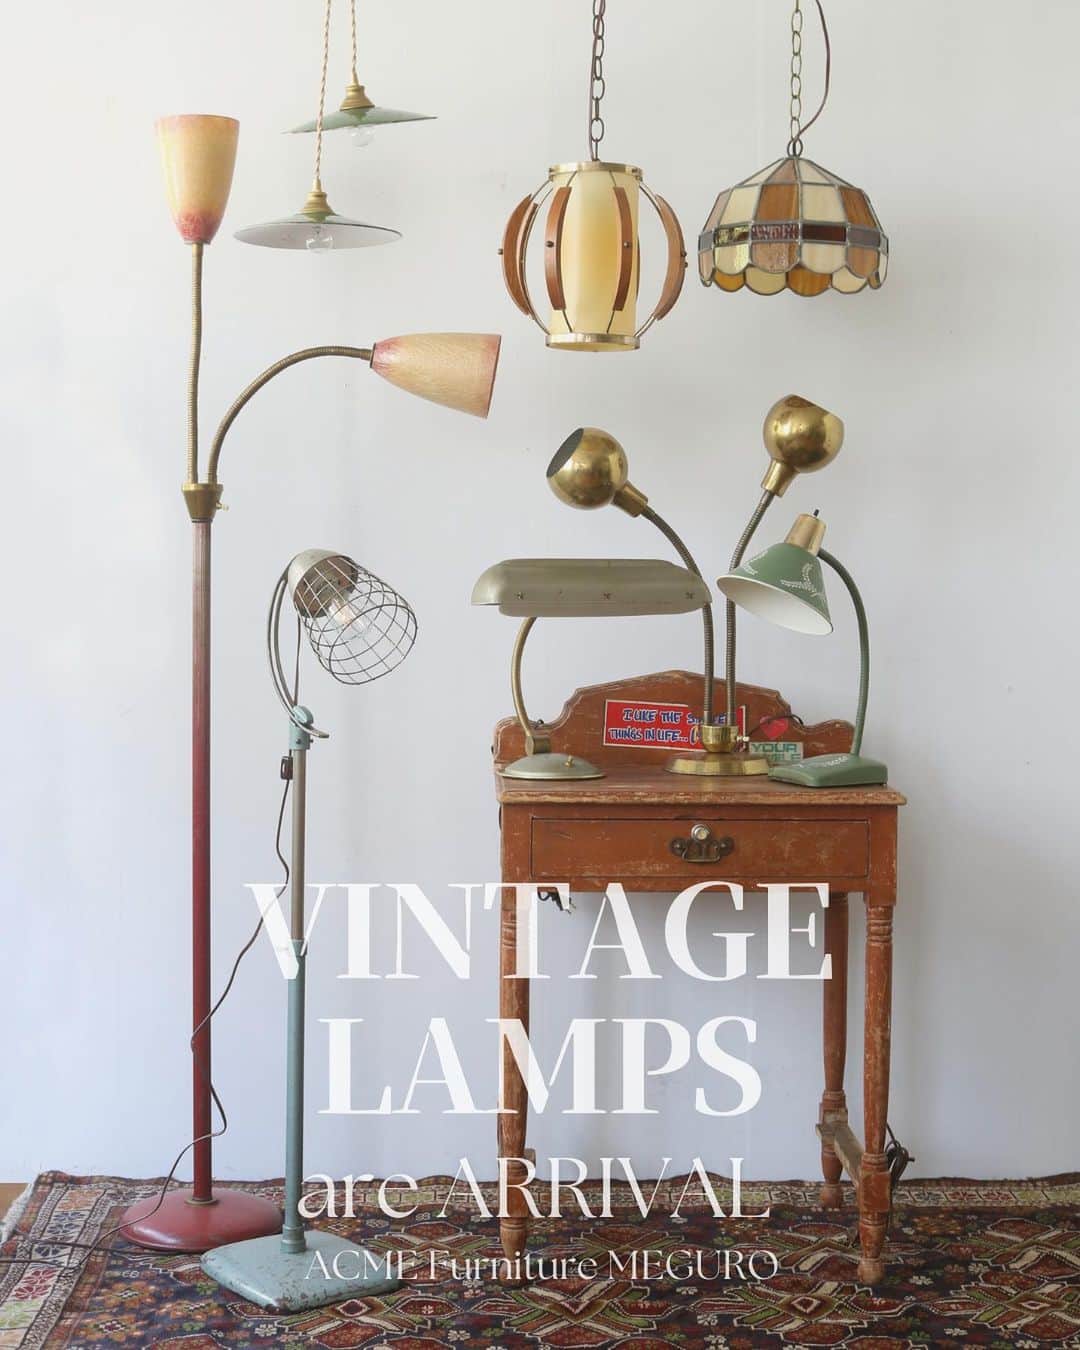 ACME Furnitureのインスタグラム：「【 VINTAGE LAMPS are Arrived 】 at ACME FURNITURE MEGURO st.  2023.11.3 (Fri)~  Pendant Lamp,Floor Lamp,Table&Desk Lamp and More.  アメリカよりVINTAGE LAMPが大量入荷しました！  1920年代～70年代に製造された当時の作り手のこだわりの詰まった様々なデザインのランプは 見ていて飽きることがありません。  ランプは全て国内専門業者によるメンテナンス済みです。  秋の夜長のお供に、お気に入りの1台を探してみてはいかがでしょうか。  Contact:ACME Furniture MEGURO St. TEL:03-5720-1071 Email:acme-jsf@baycrews.co.jp  #acmefurniture #vintagelamp #vintagefurniture #pendantlamp #floorlamp #tablelamp #desklamp」